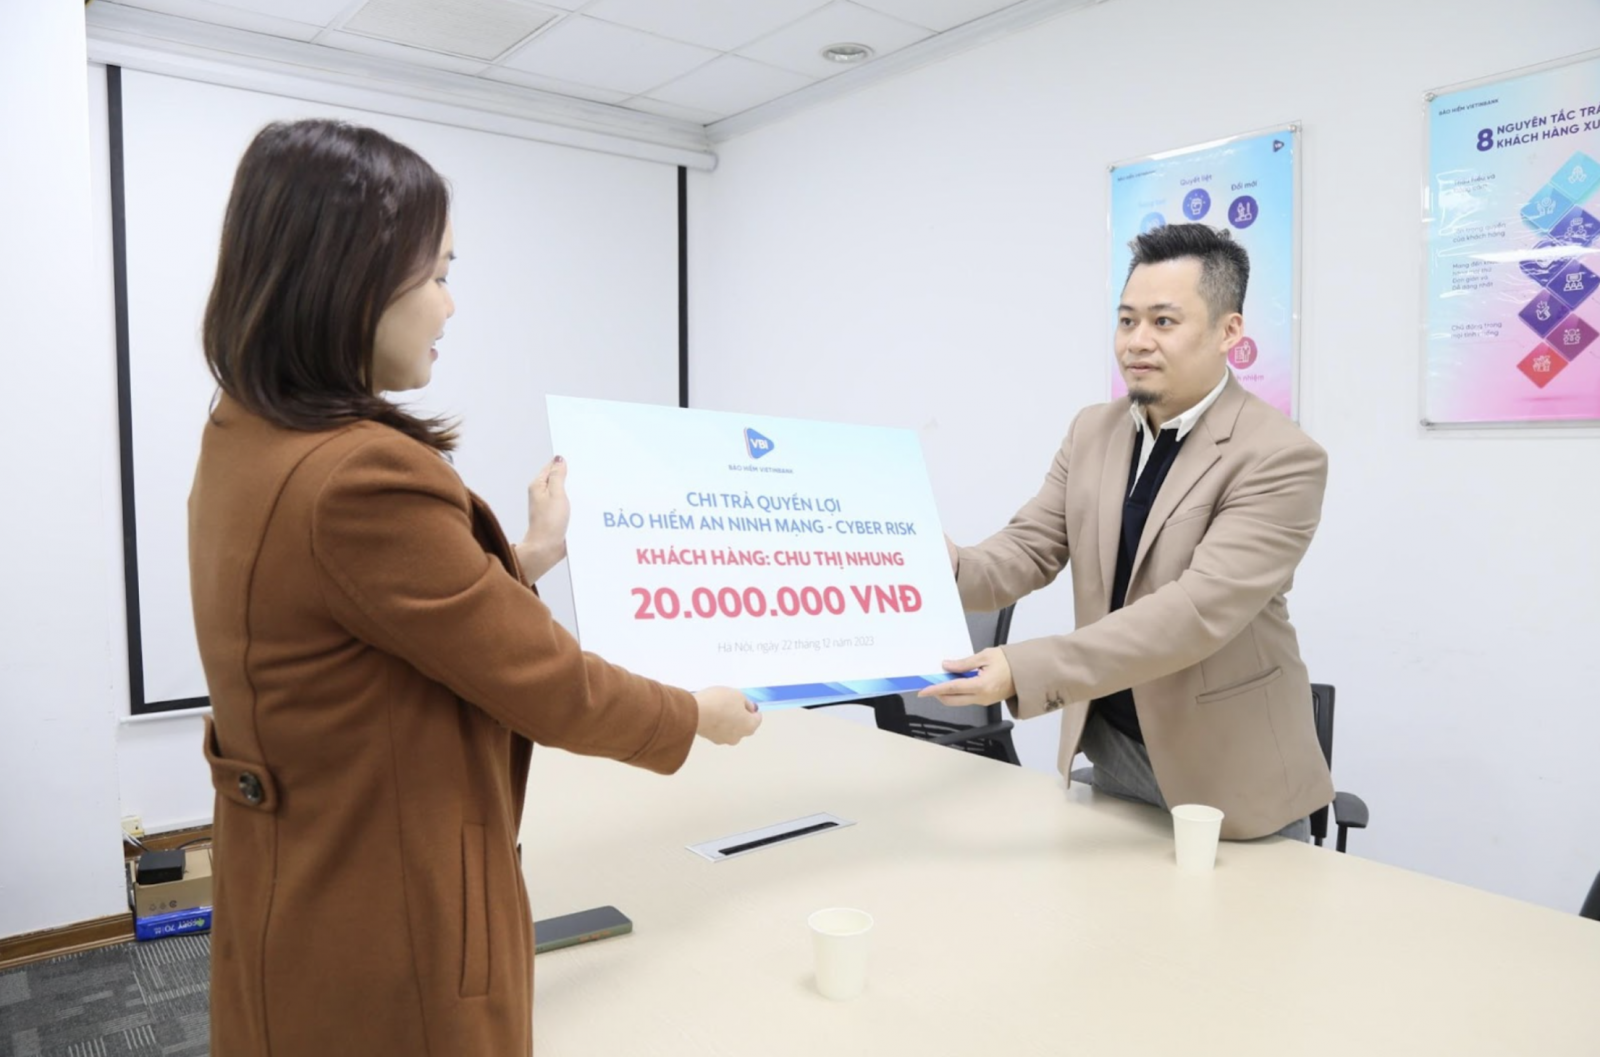 Đại diện Bảo hiểm VietinBank - VBI trao quyền lợi Bảo hiểm An ninh mạng - Cyber Risk cho khách hàng Chu Thị Nhung 